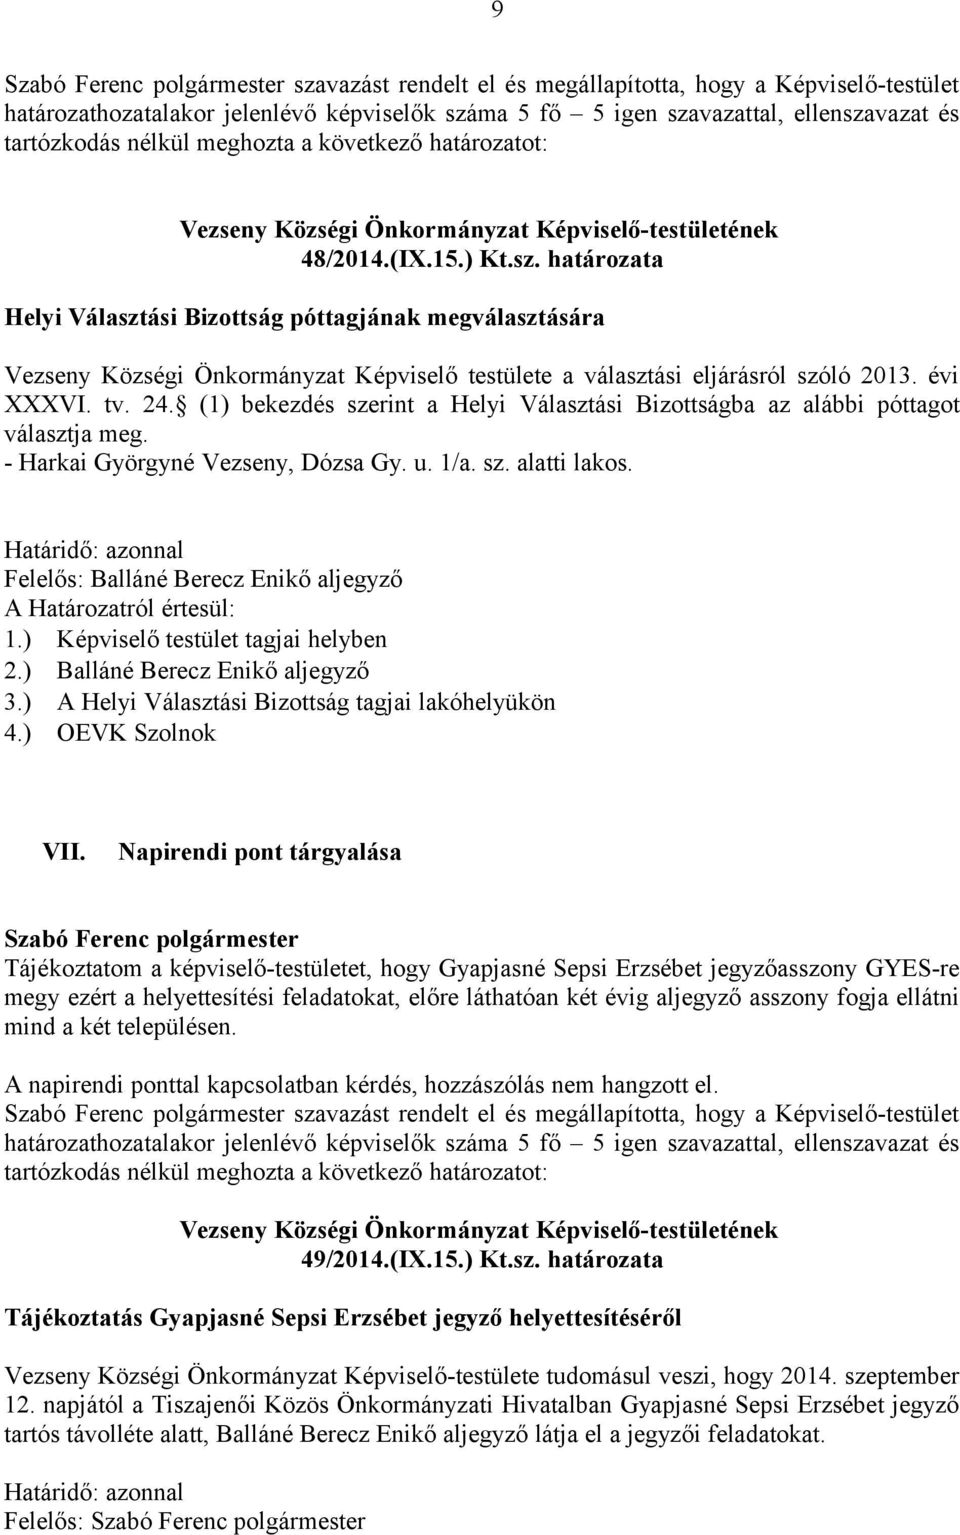 határozata Helyi Választási Bizottság póttagjának megválasztására Vezseny Községi Önkormányzat Képviselő testülete a választási eljárásról szóló 2013. évi XXXVI. tv. 24.